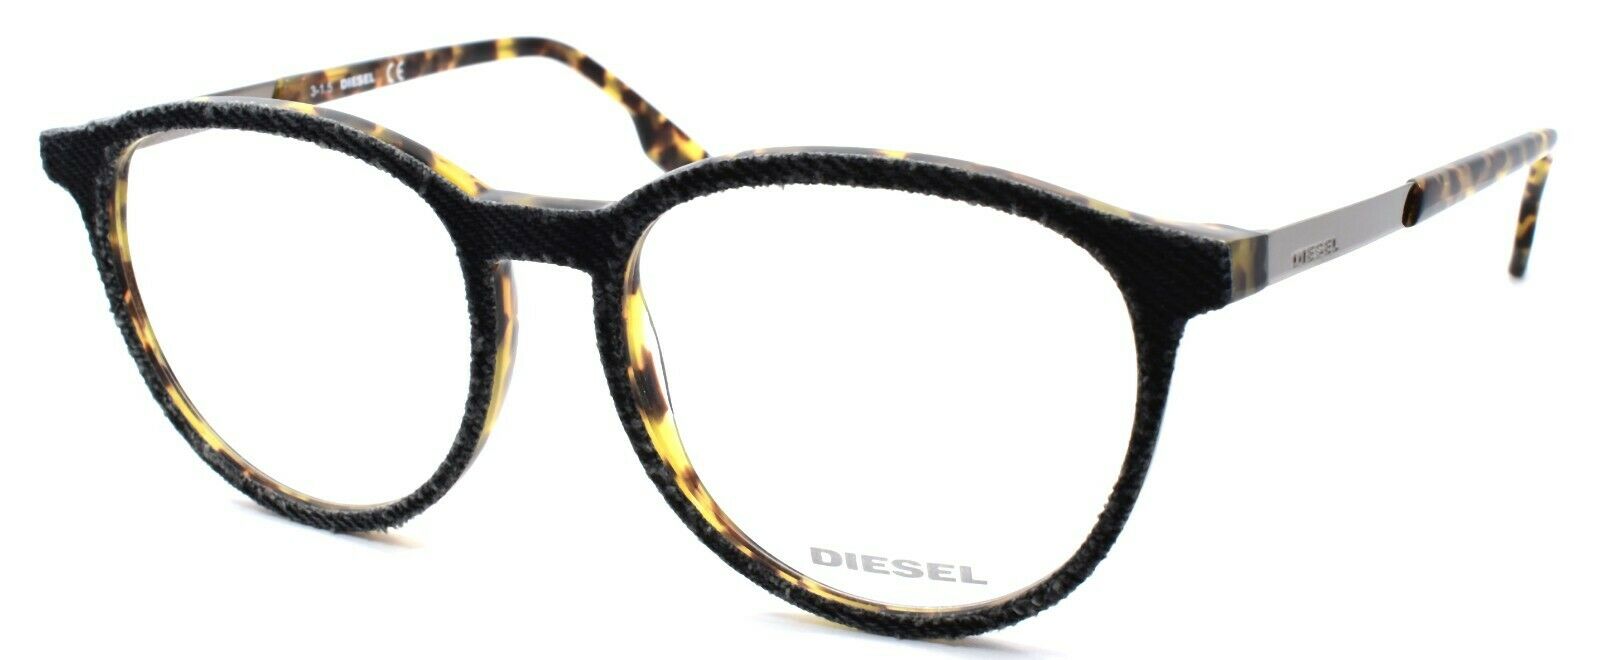 1-Diesel DL5117 005 Unisex Eyeglasses Frames 52-17-145 Black Denim / Blonde Havana-664689647026-IKSpecs